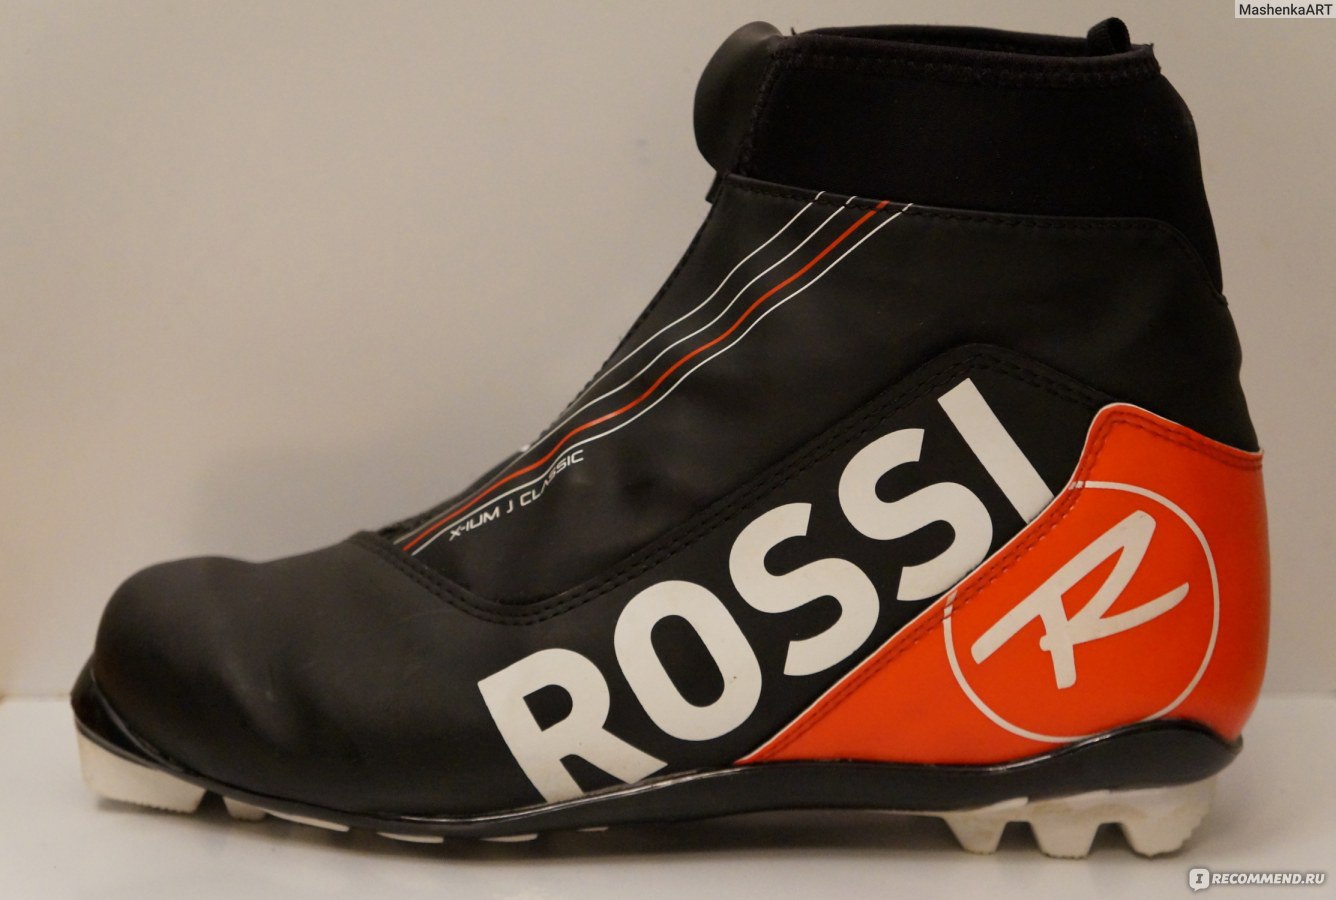 Ботинки Rossignol X-ium J Classic для беговых лыж - «На примере RossignolX-ium J Classic расскажу , как выбрать ботинки для беговых лыж и на чтообратить внимание при покупке »